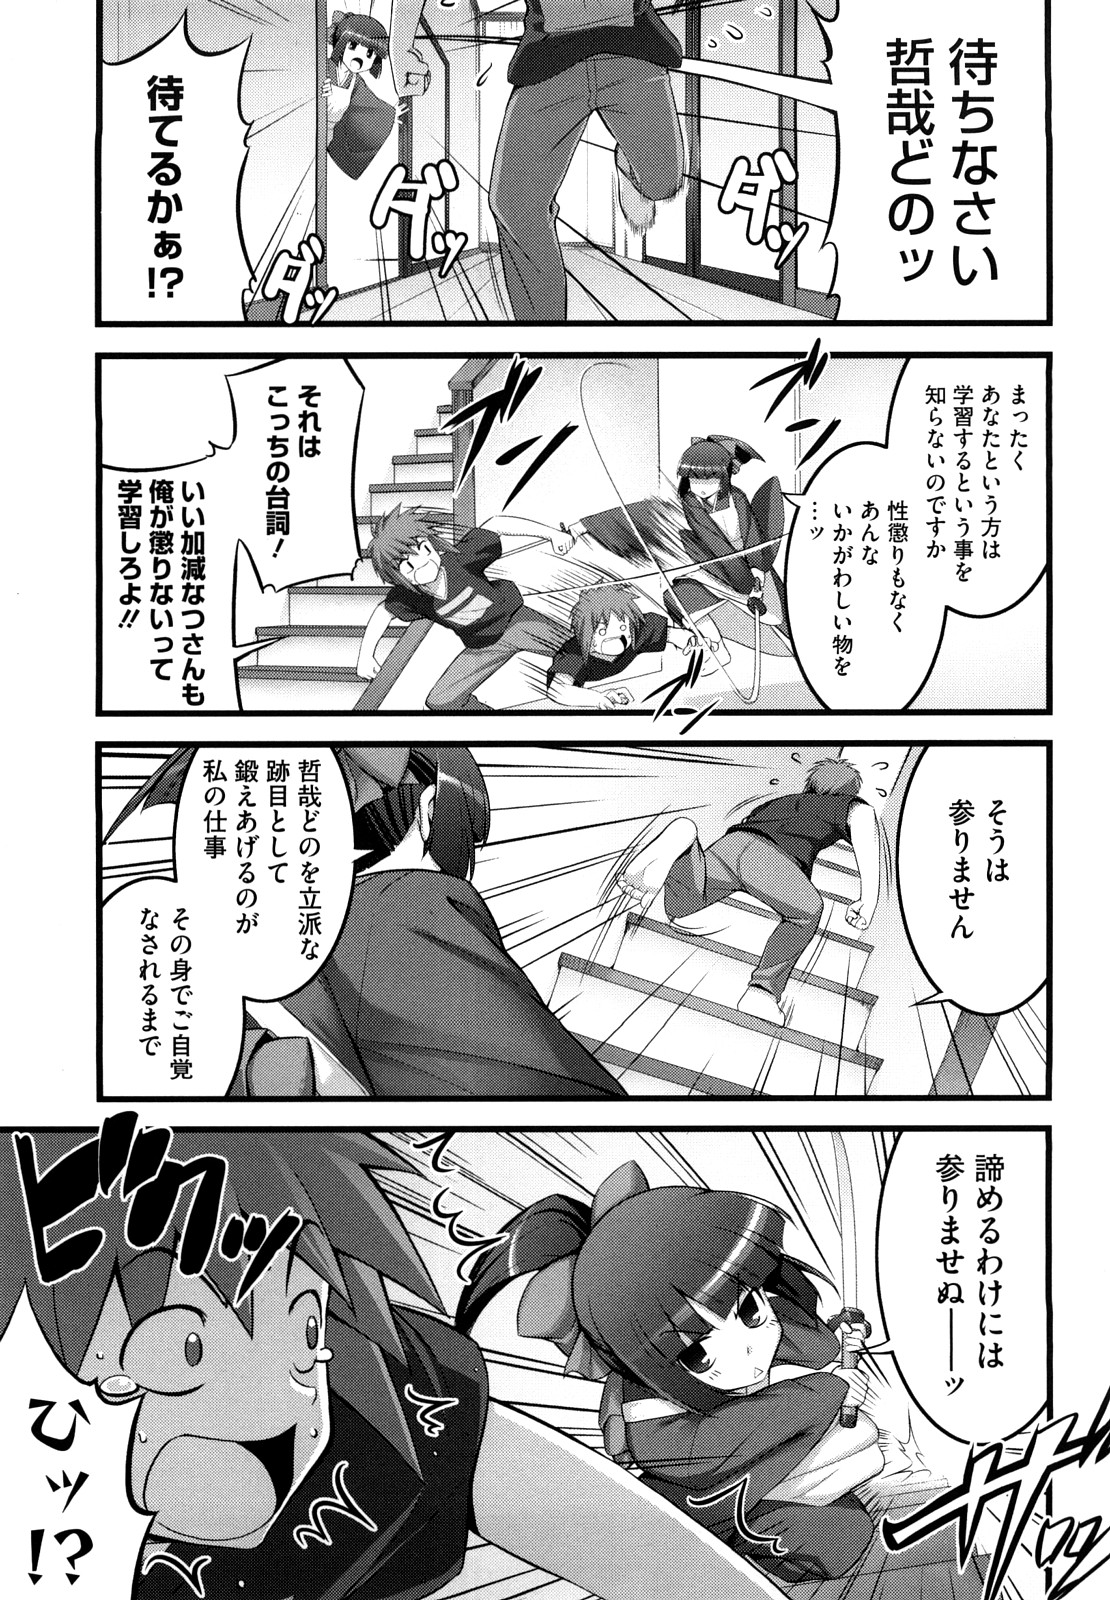 [Namonashi] Ken yori Tsuyoshi - Mightier Than The Sword. page 46 full